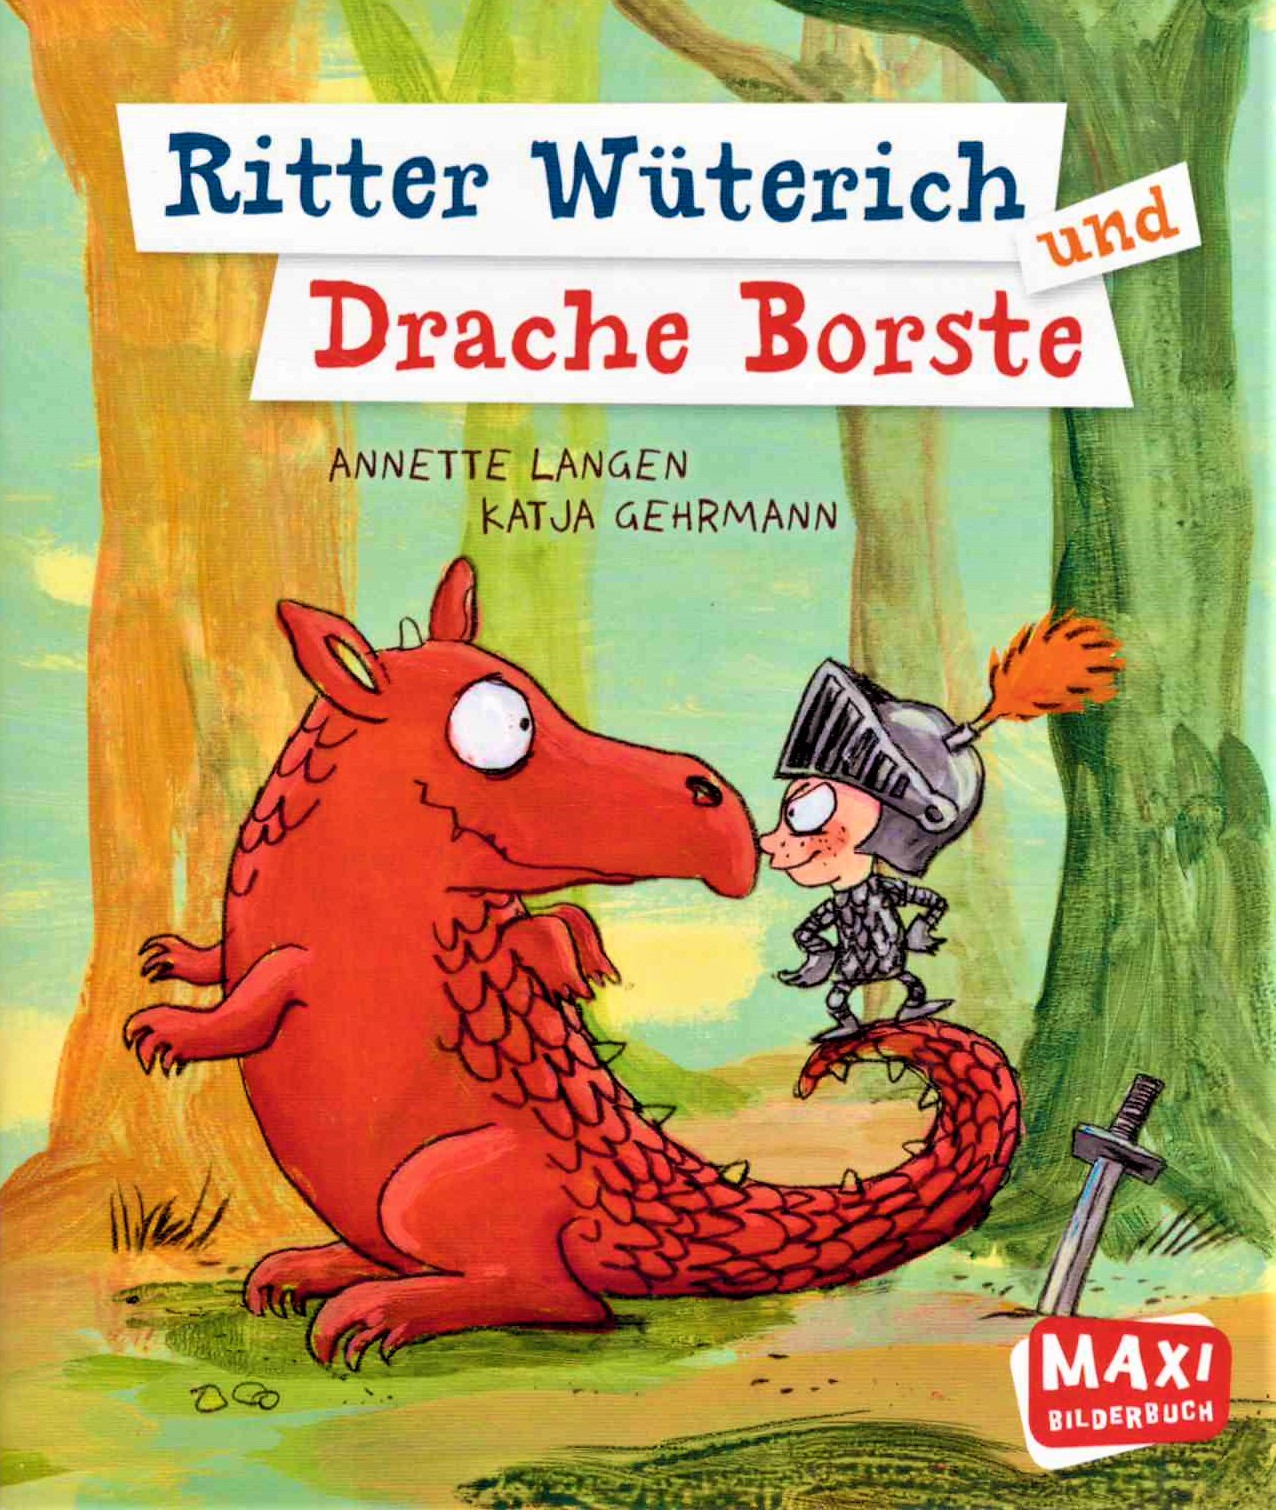 Ritter Wuterich und Drache Borste